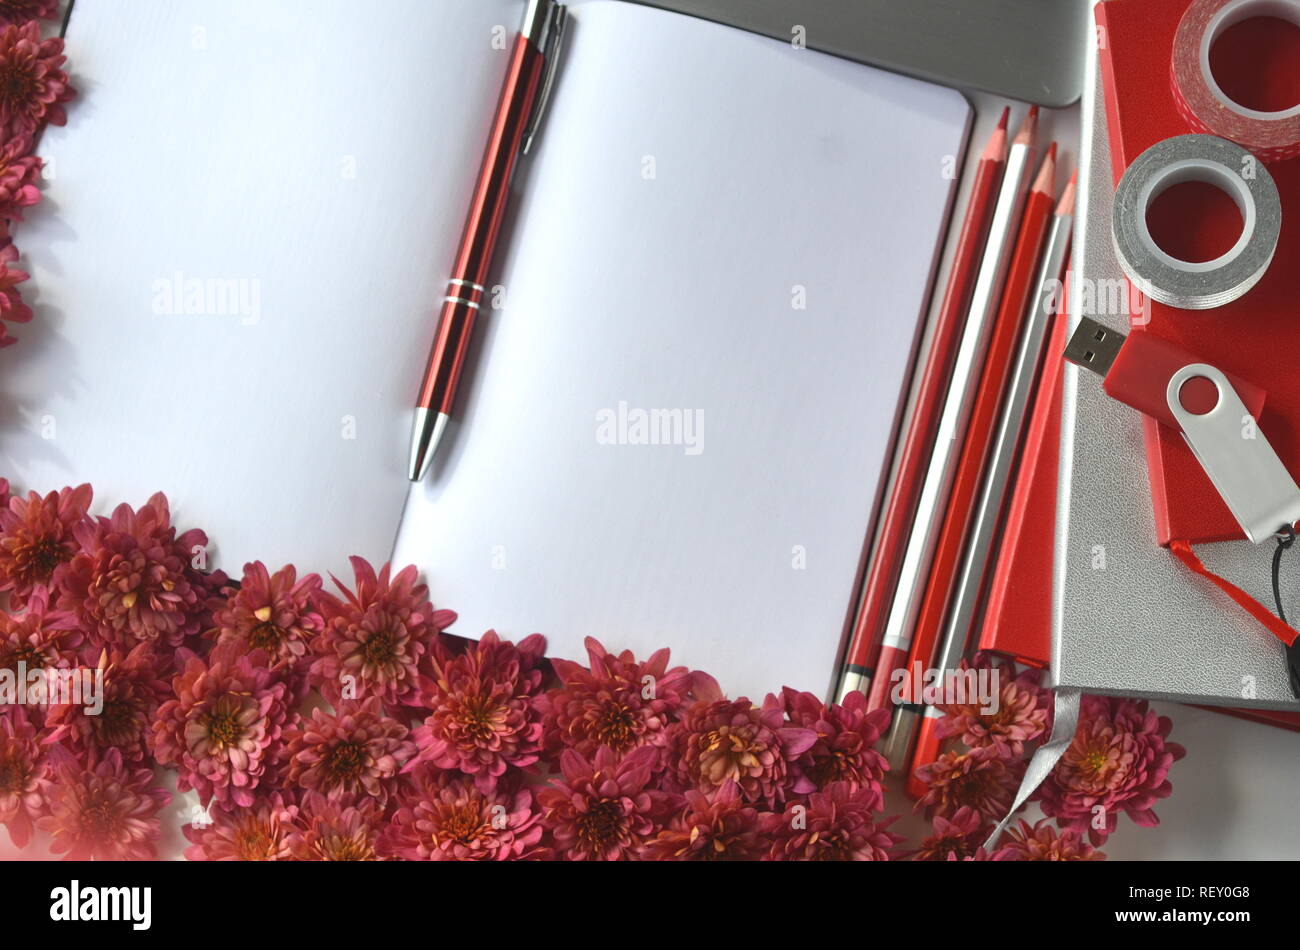 Automne Automne fond floral rouge profond avec chrysantemums sur fond blanc avec l'exemplaire de l'espace. Maquette de carte de vœux et de frontière. Espace de travail de bureau télévision mise en page. Banque D'Images